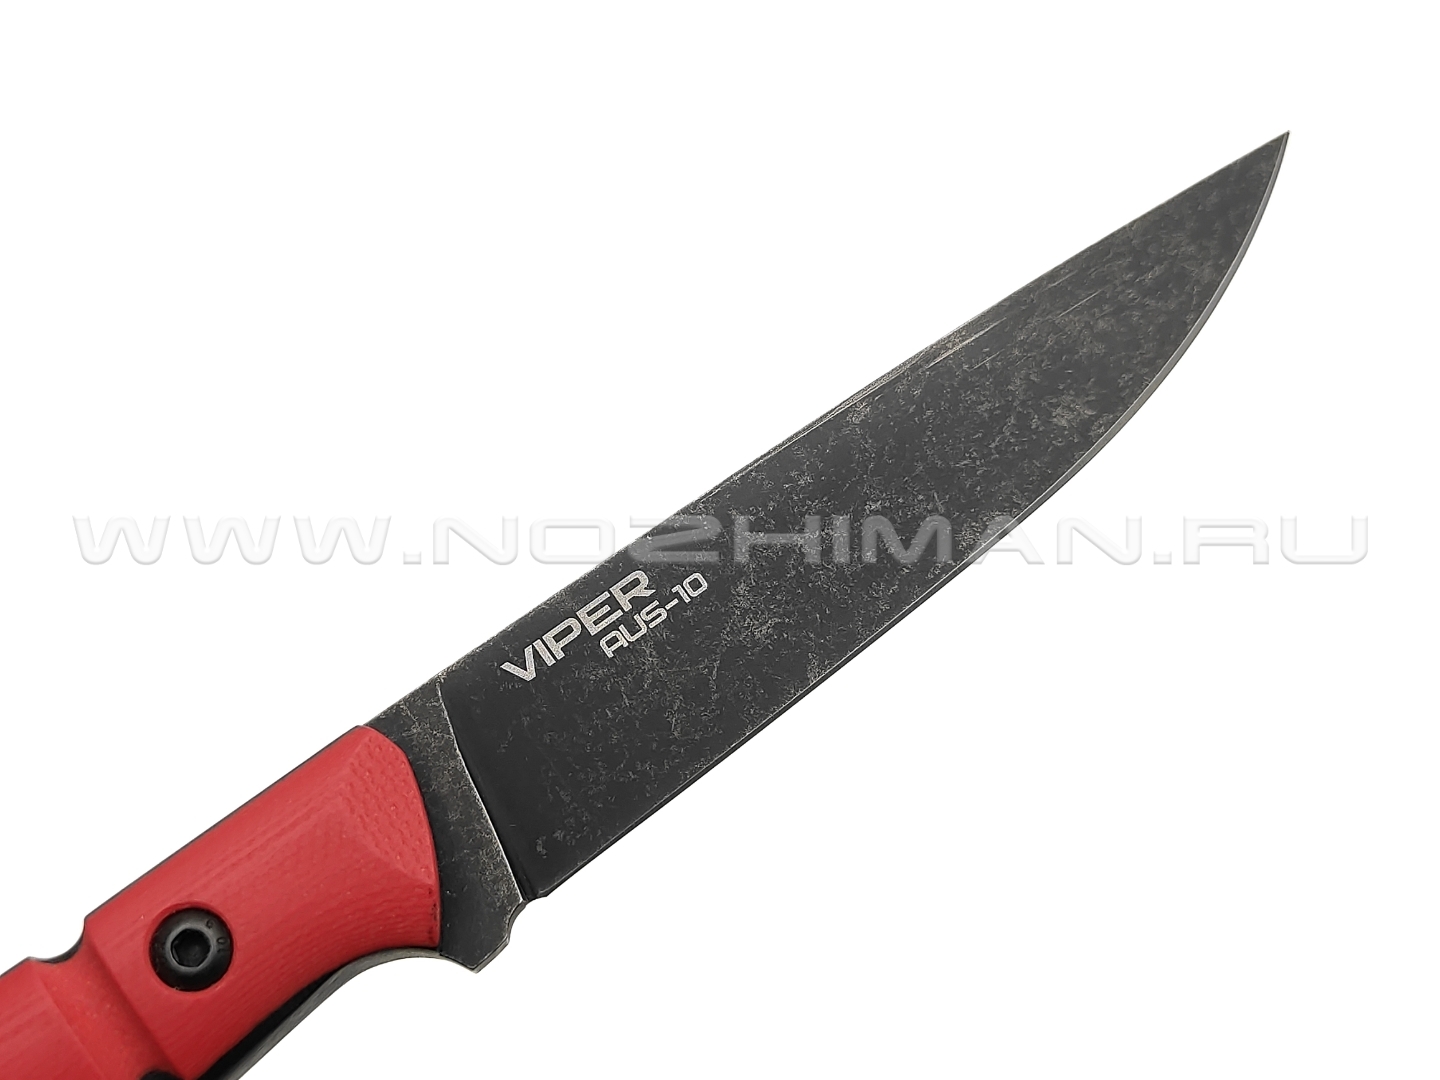 N.C.Custom нож Viper сталь Aus-10 blackwash, рукоять G10 red & black